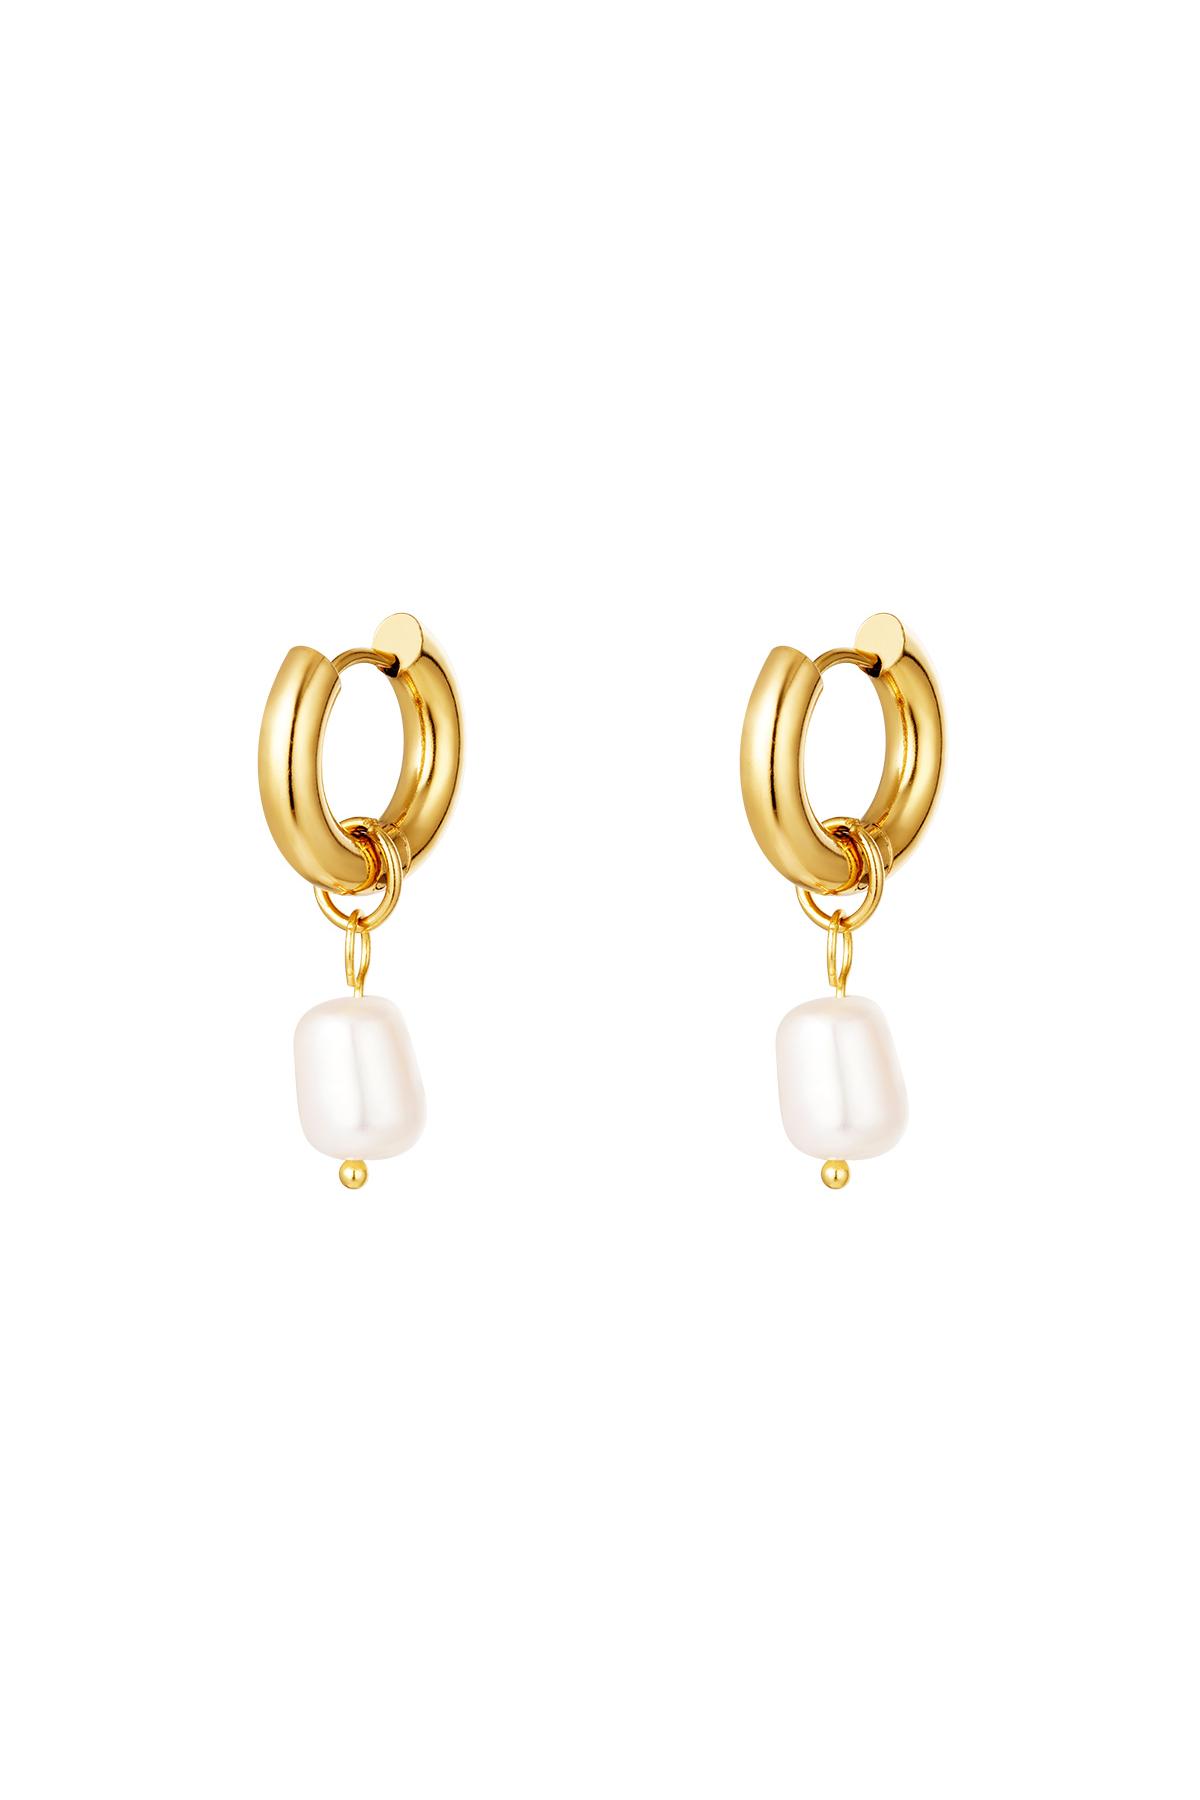 Stainless steel earrings pearls simple Gold